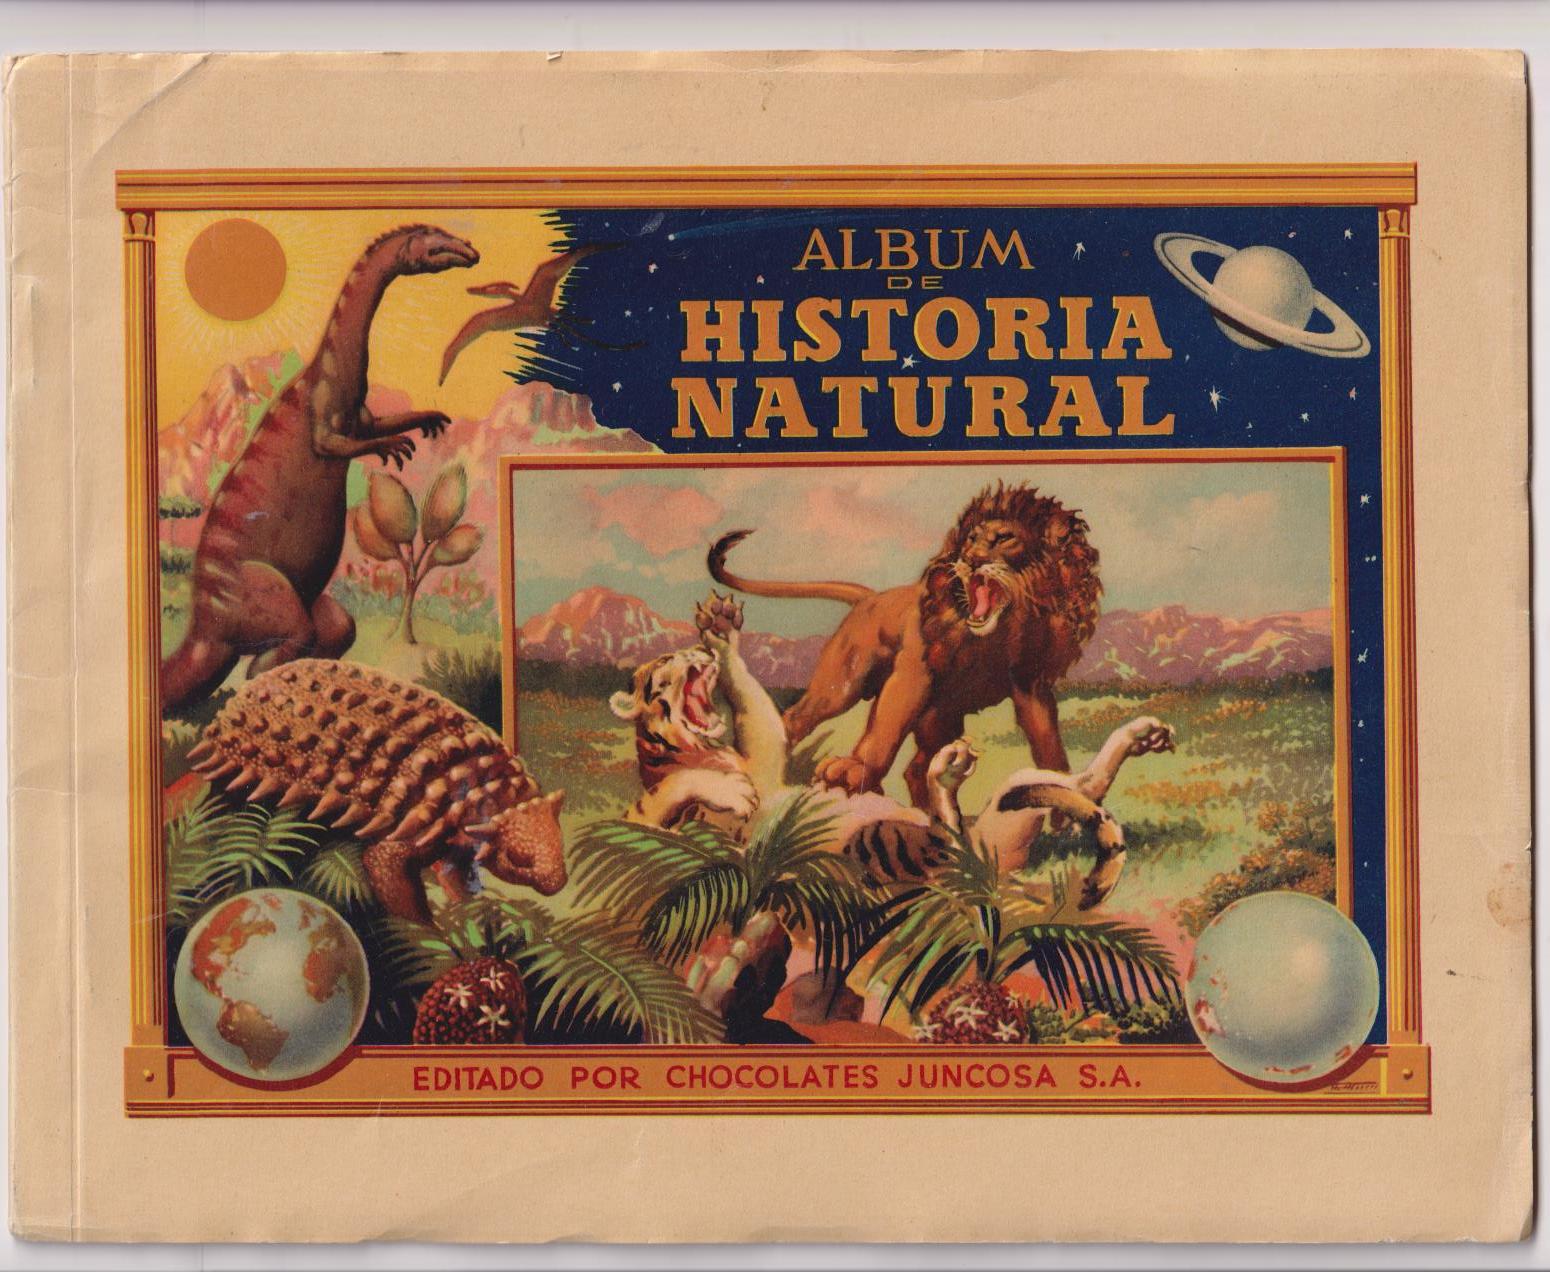 Álbum de Historia Natural. Tomo II. Europa Chocolates Juncosa 1958. Contiene 43 cromos